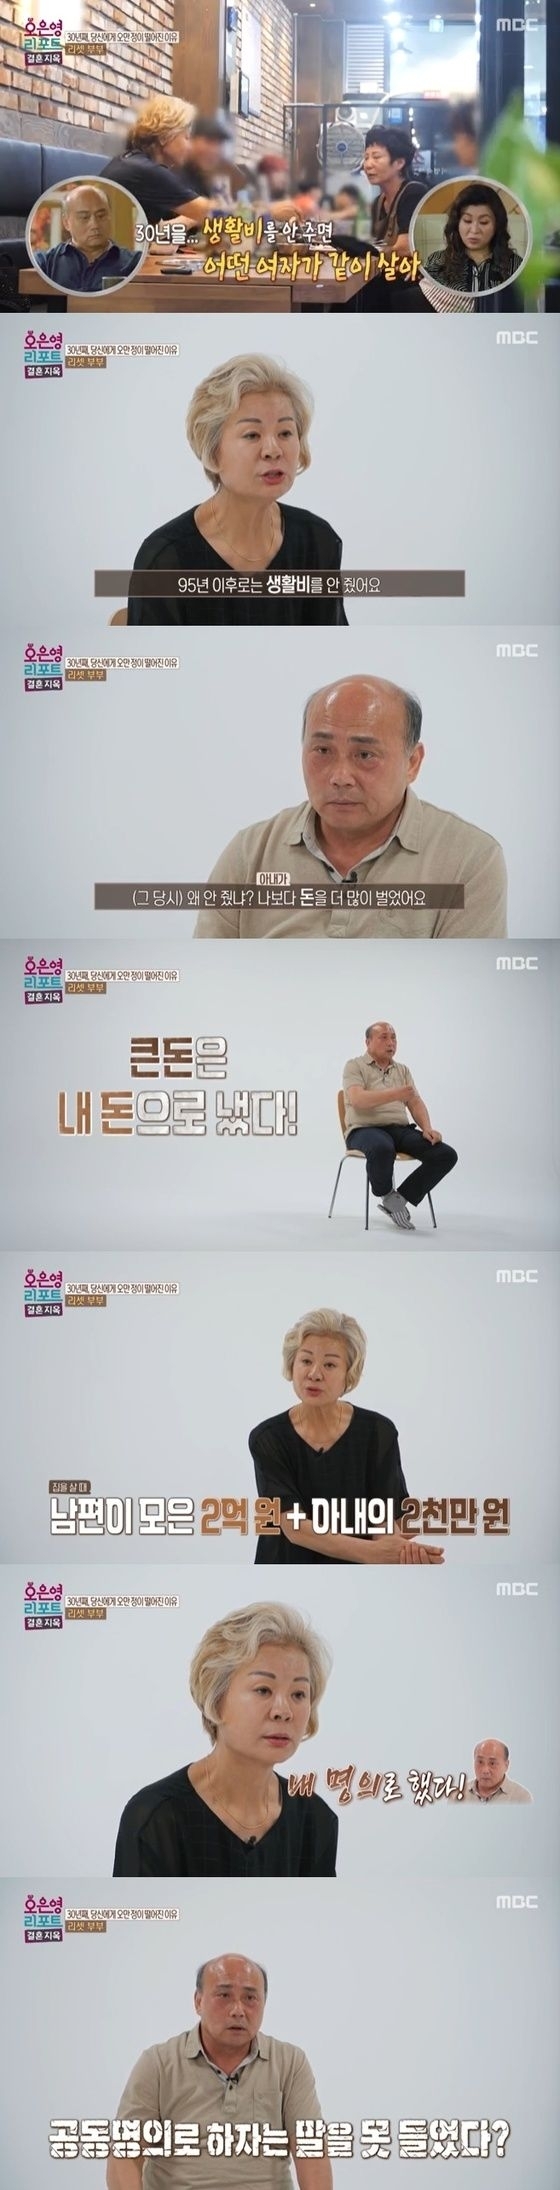 MBC ‘오은영 리포트 - 결혼 지옥’